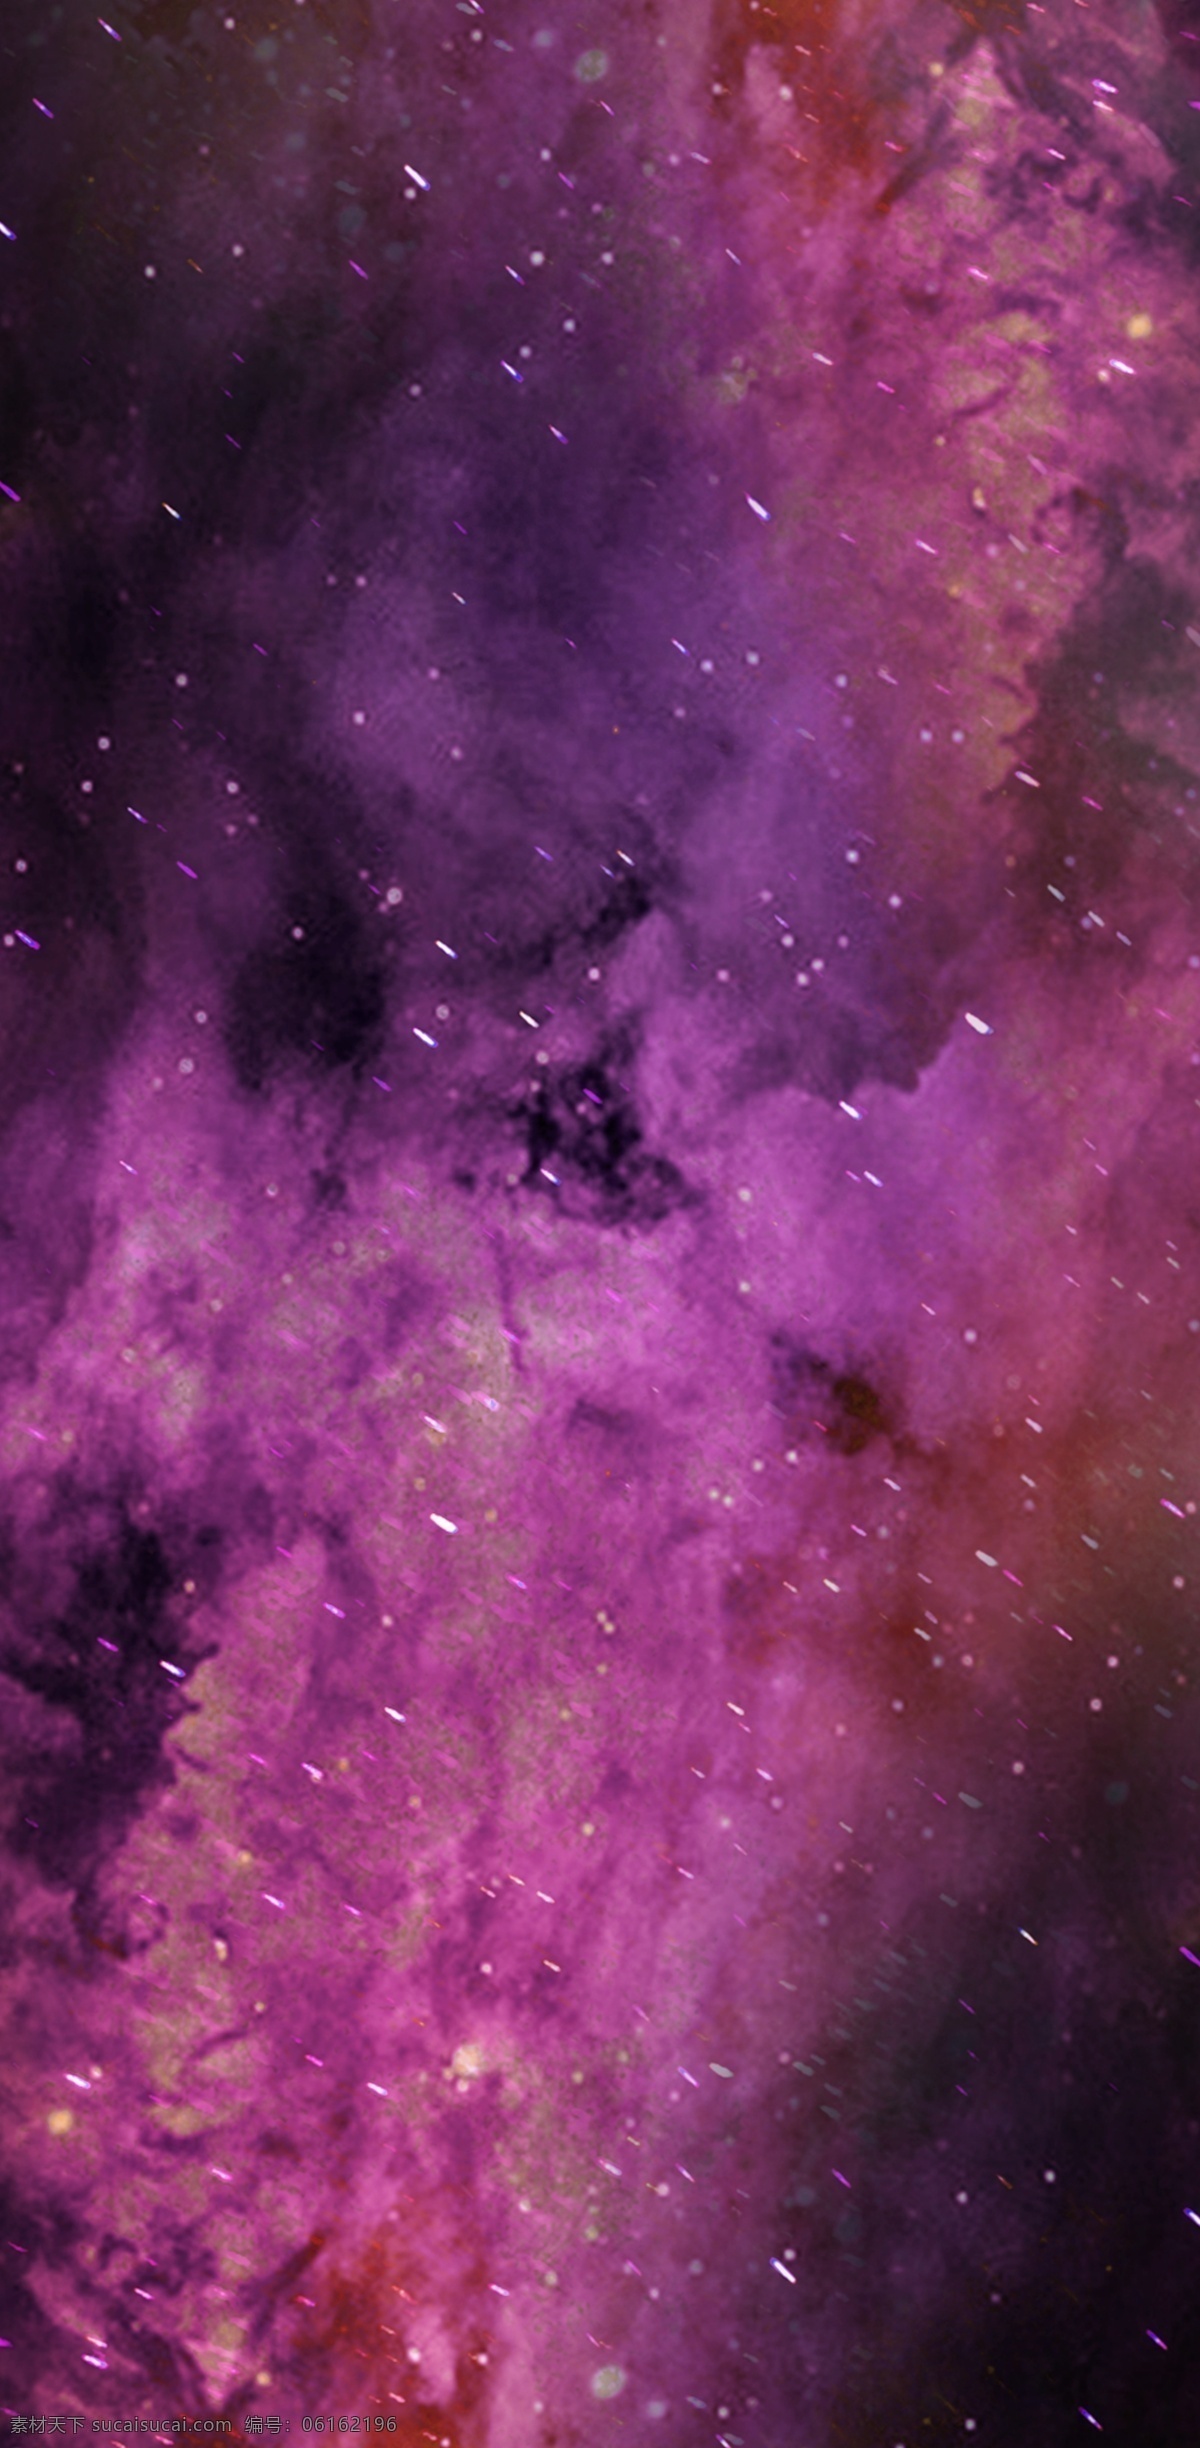 原创 暗 色系 枯竭 星空 大地 紫色 幽冥 手机壳 春夏 暗色系 大气 唯美 电子机械包装